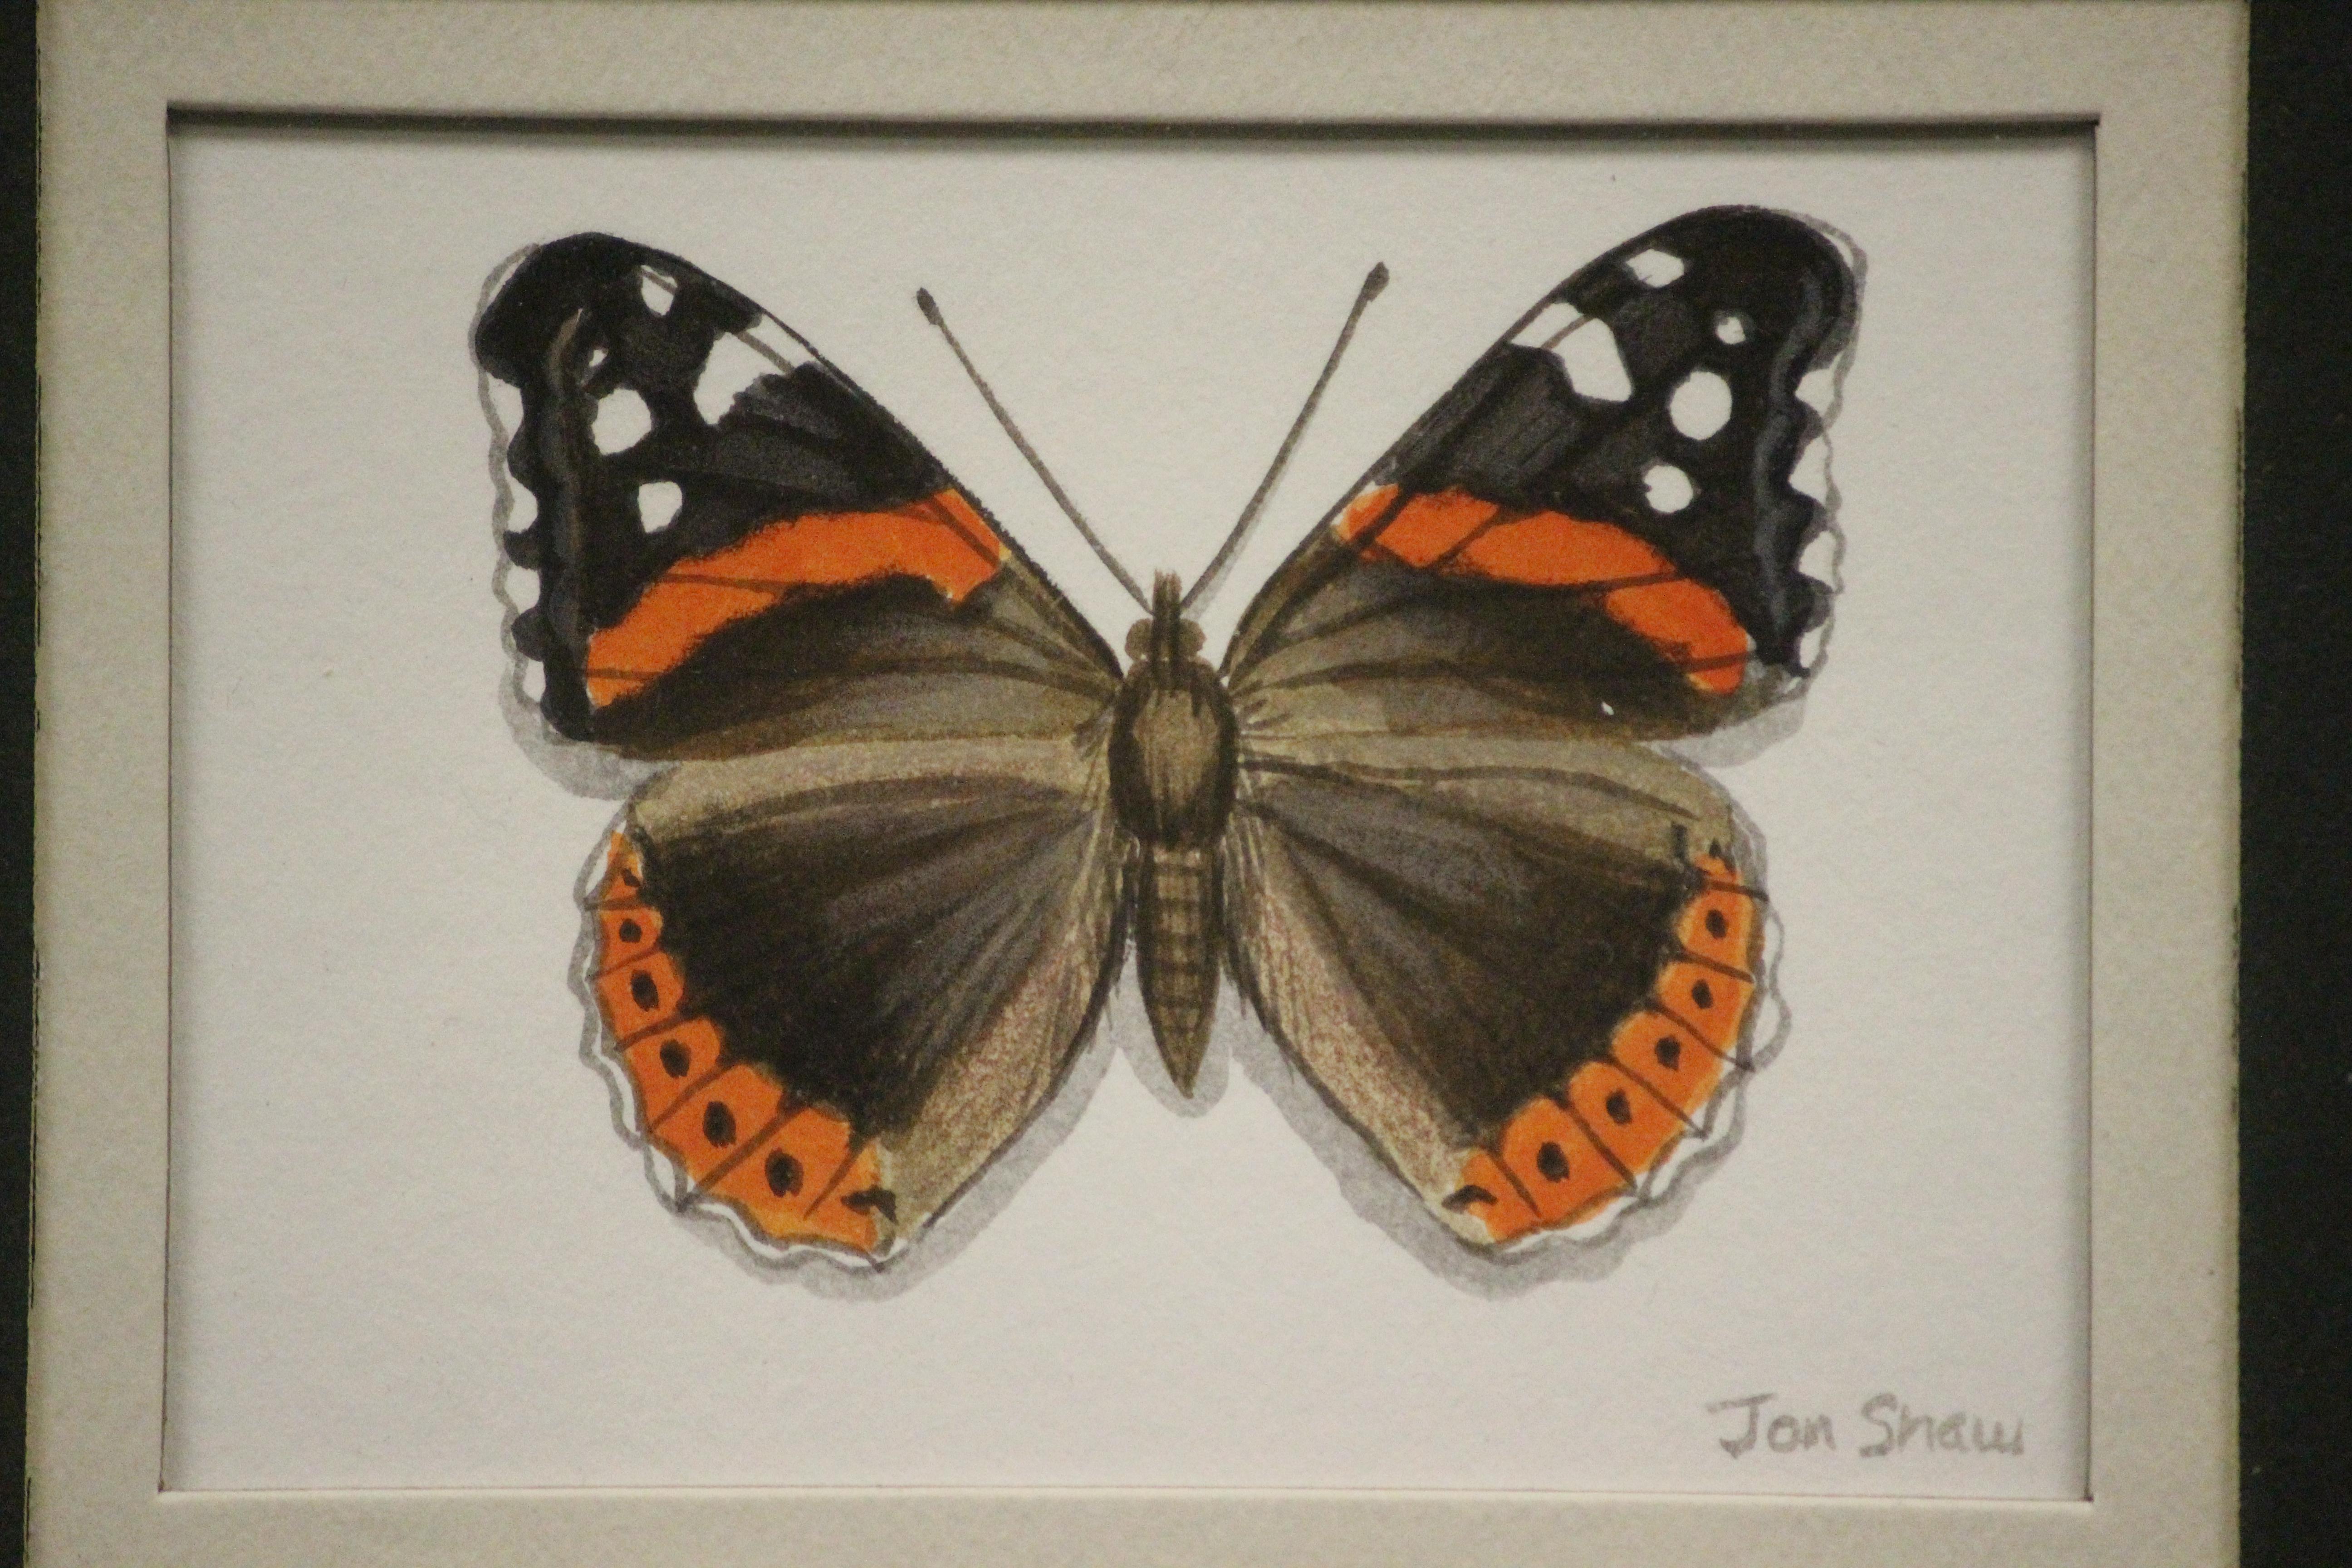 Délicieuse aquarelle représentant quatre papillons, chacun signé au crayon : Jon(athan) Shaw (LR)

Art Sz : 6 